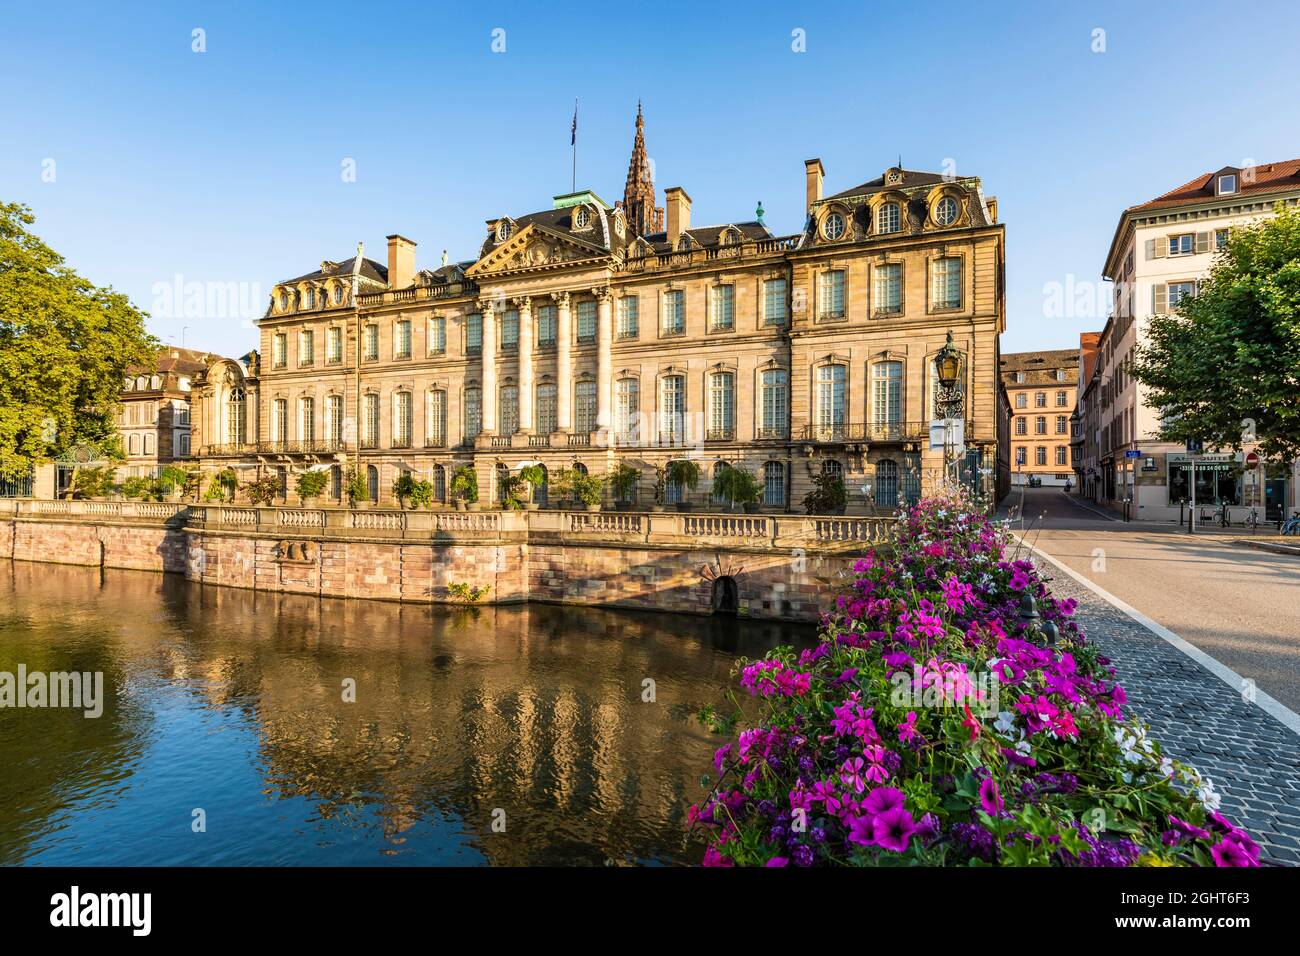 Palais Rohan sur les rives de l'Ill, Strasbourg, Alsace, France Banque D'Images